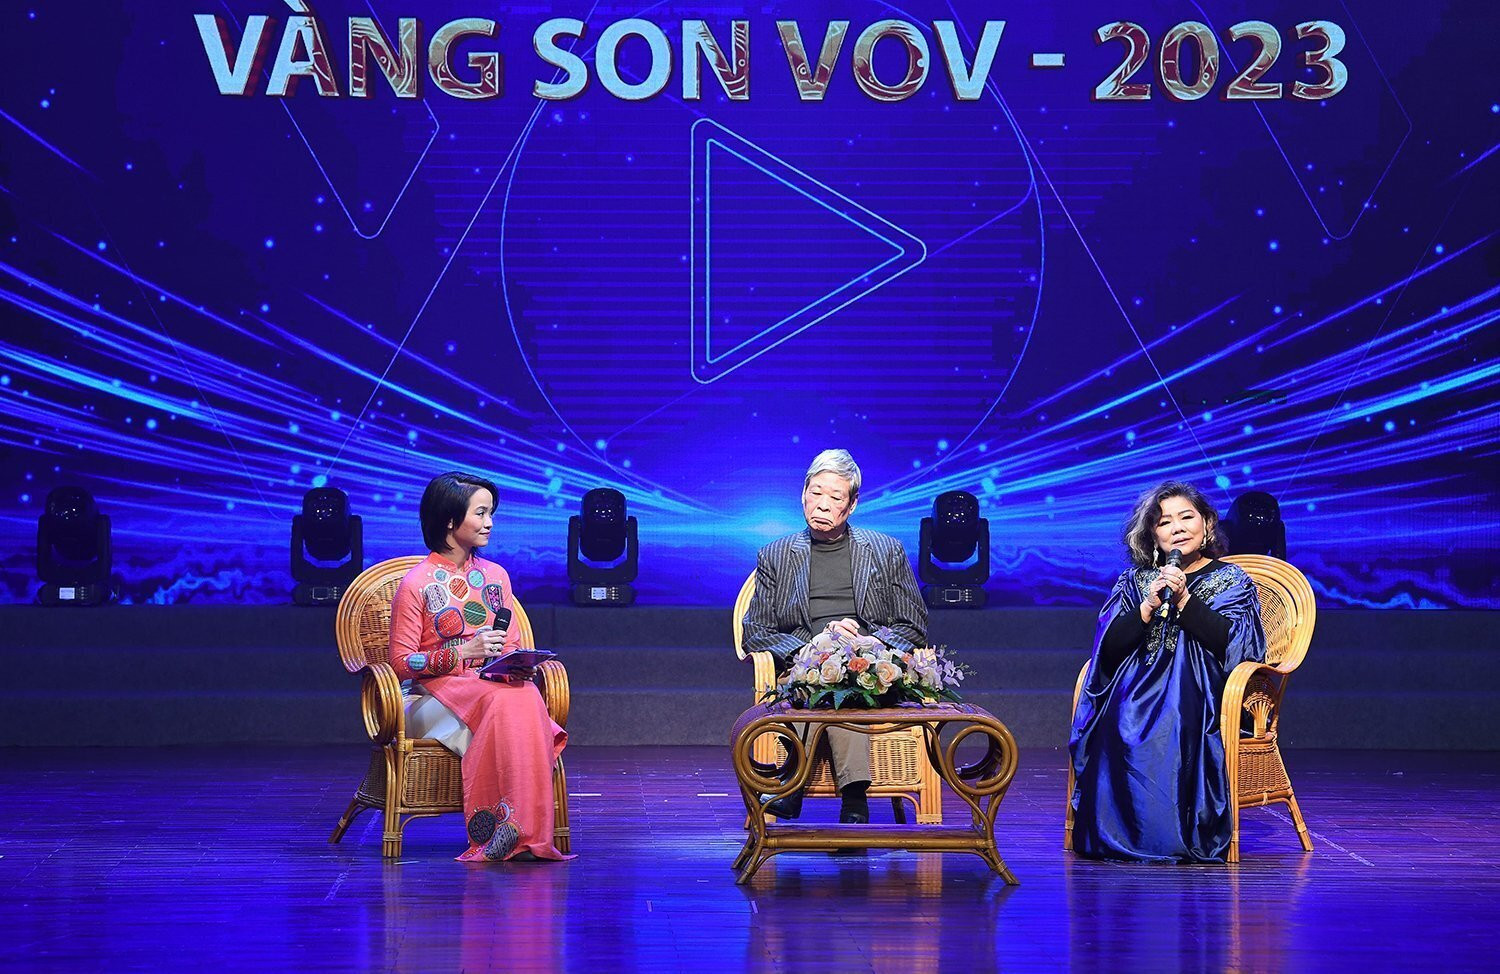 NSND Thanh Hoa, nhạc sĩ Thuỵ Kha là khách mời của chương trình.